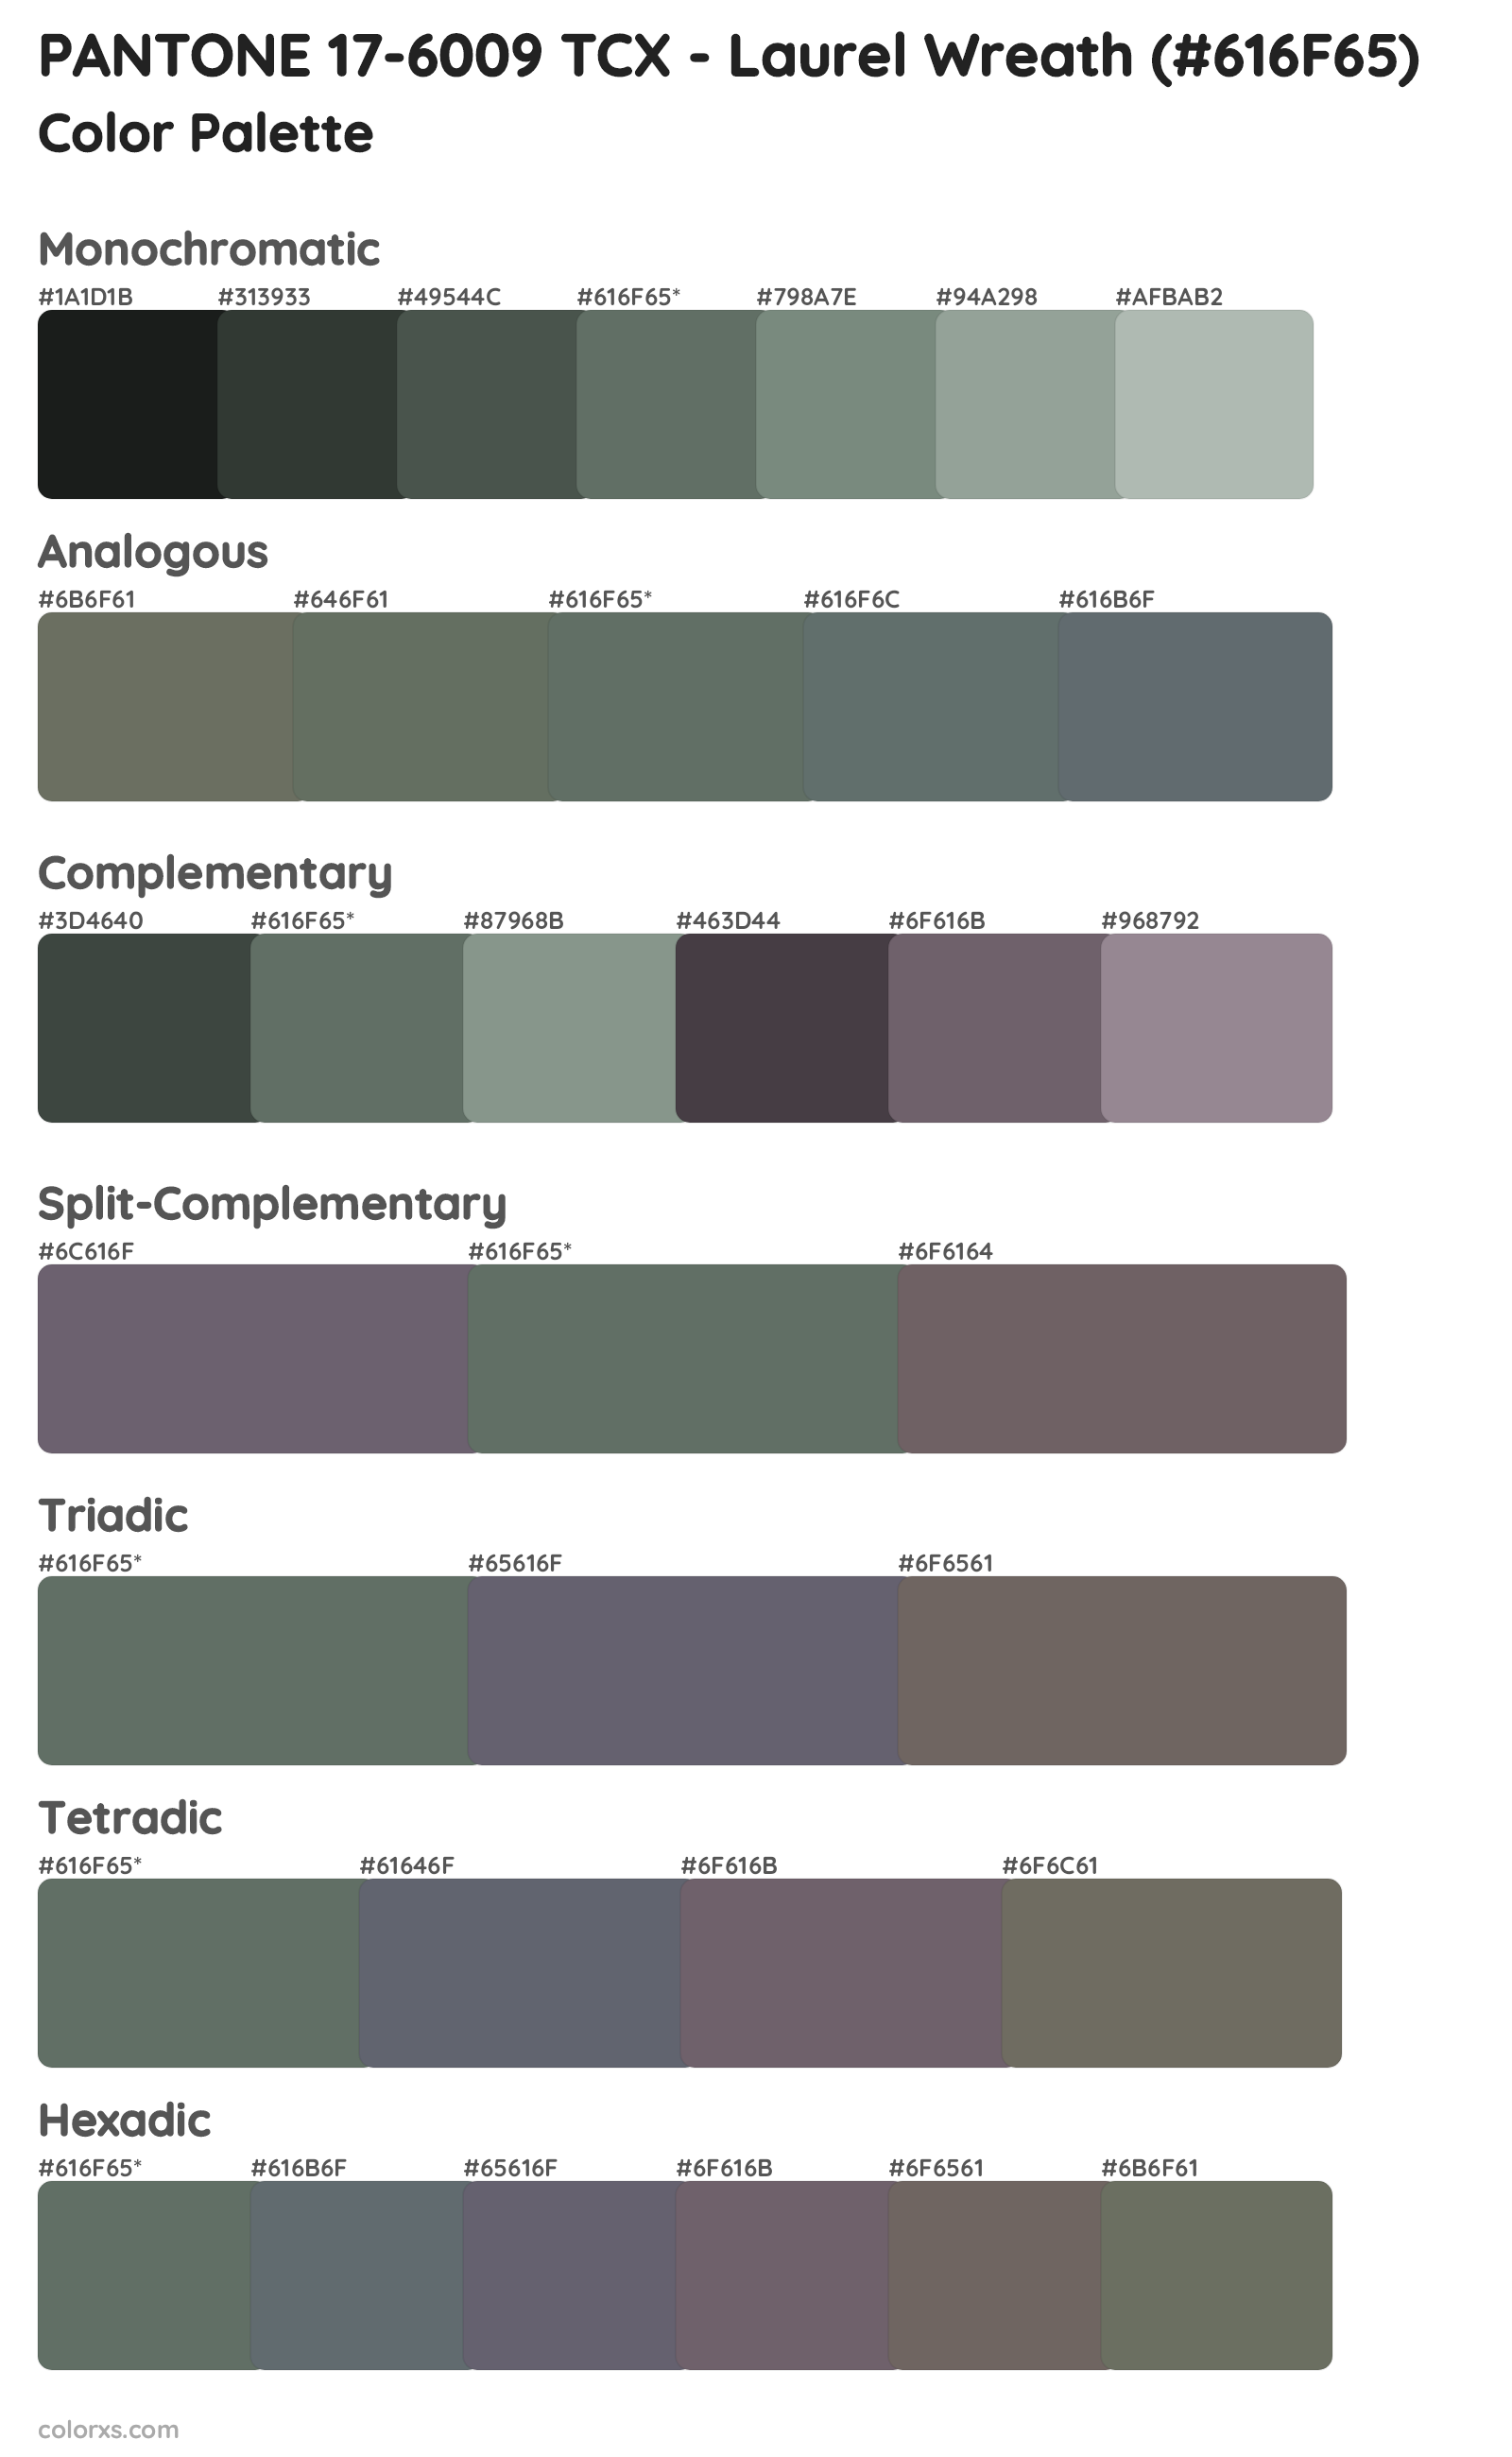 PANTONE 17-6009 TCX - Laurel Wreath Color Scheme Palettes